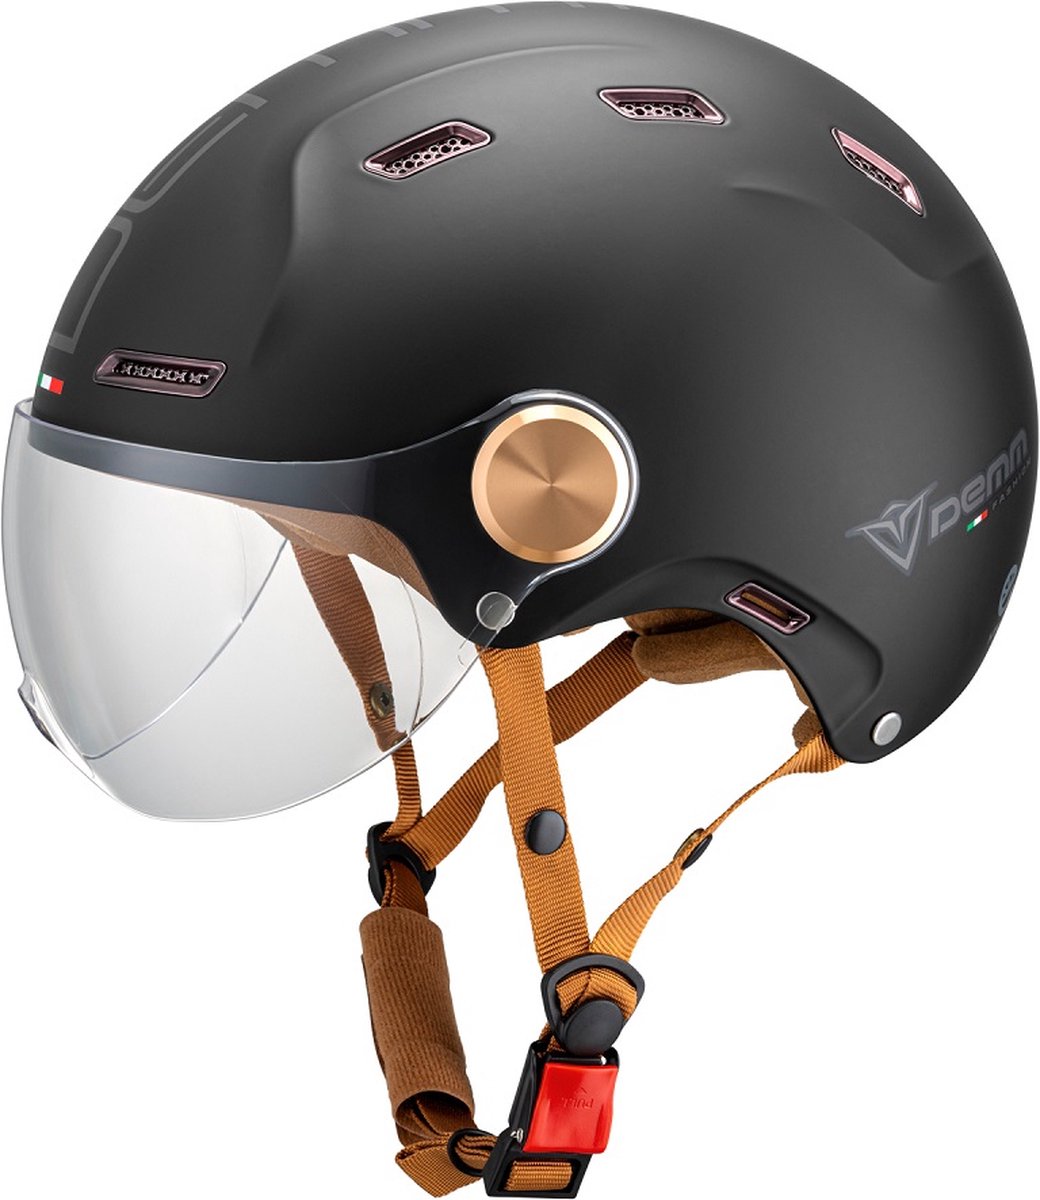 DEMM Speed Pedelec E-bike / snorfiets helm - mat zwart - L / 59 cm